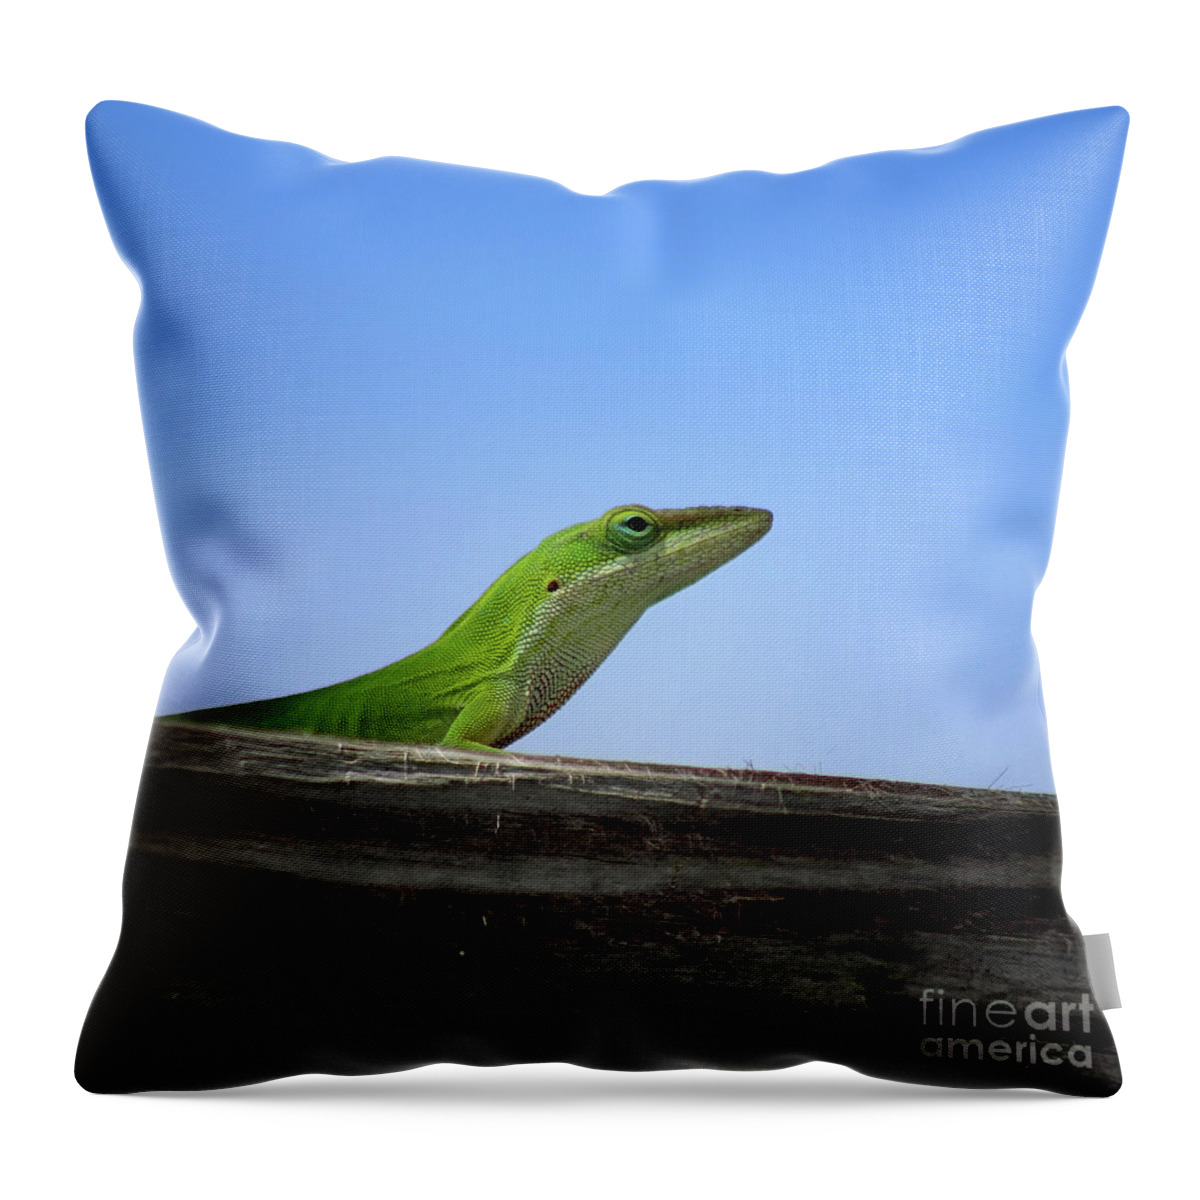 Green Anole Lizard Throw Pillow featuring the photograph Green Anole Lizard Square by Karen Adams